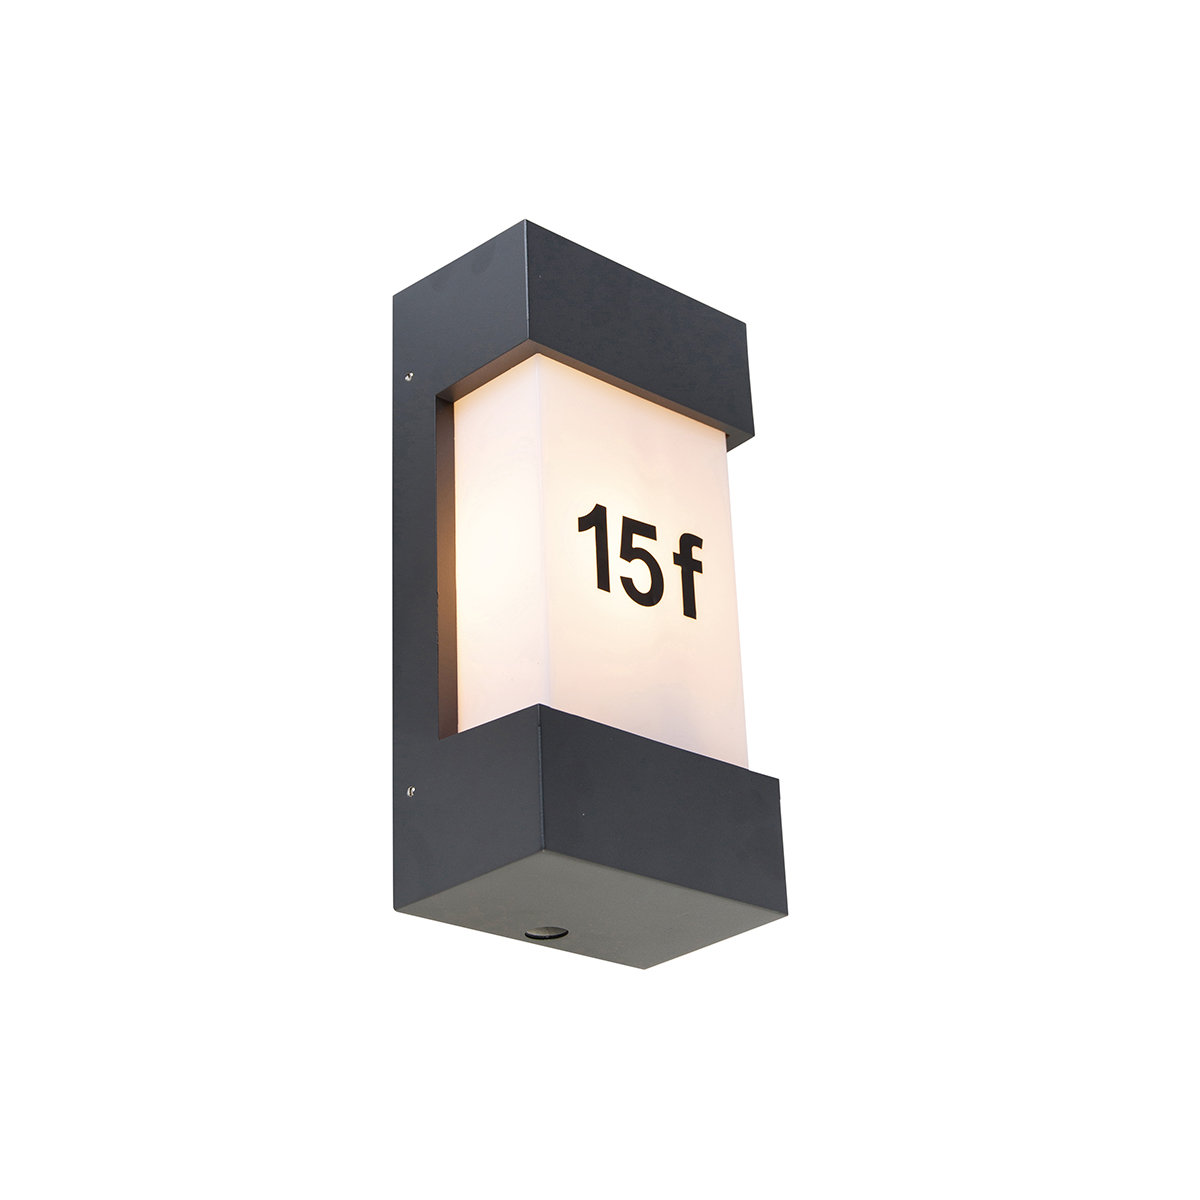 Kültéri fali lámpa sötétszürke IP44 világos-sötétség érzékelő - Árapály